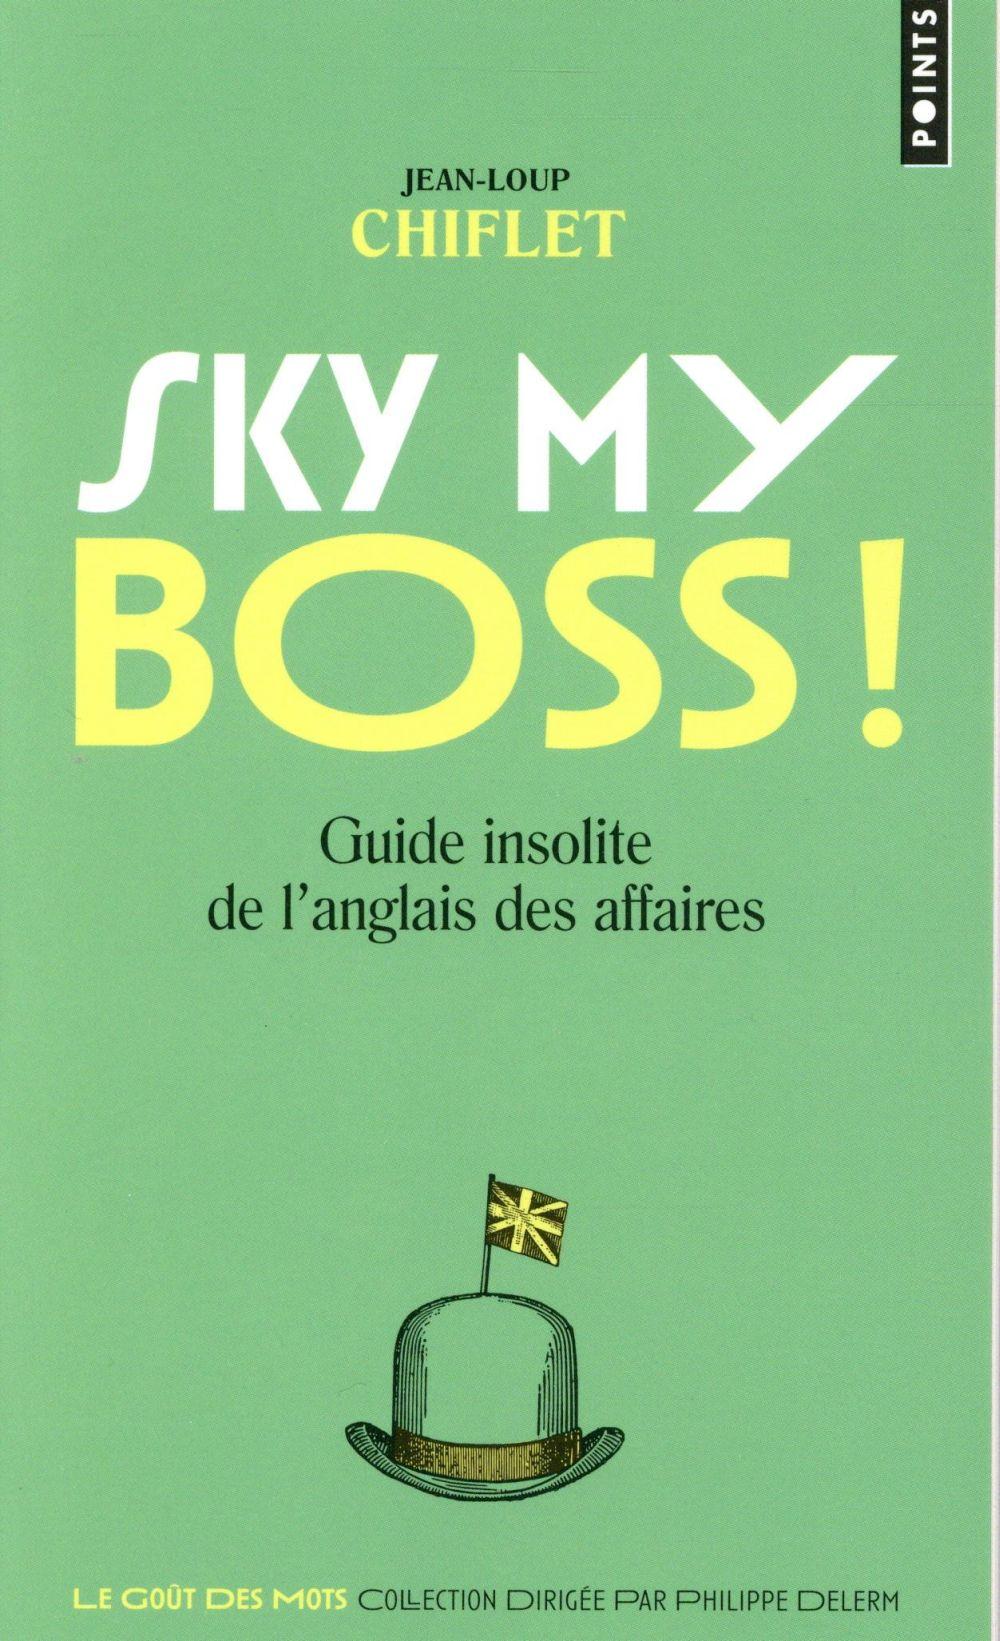 Sky my boss ! guide insolite de l'anglais des affaires  - Jean-Loup Chiflet  